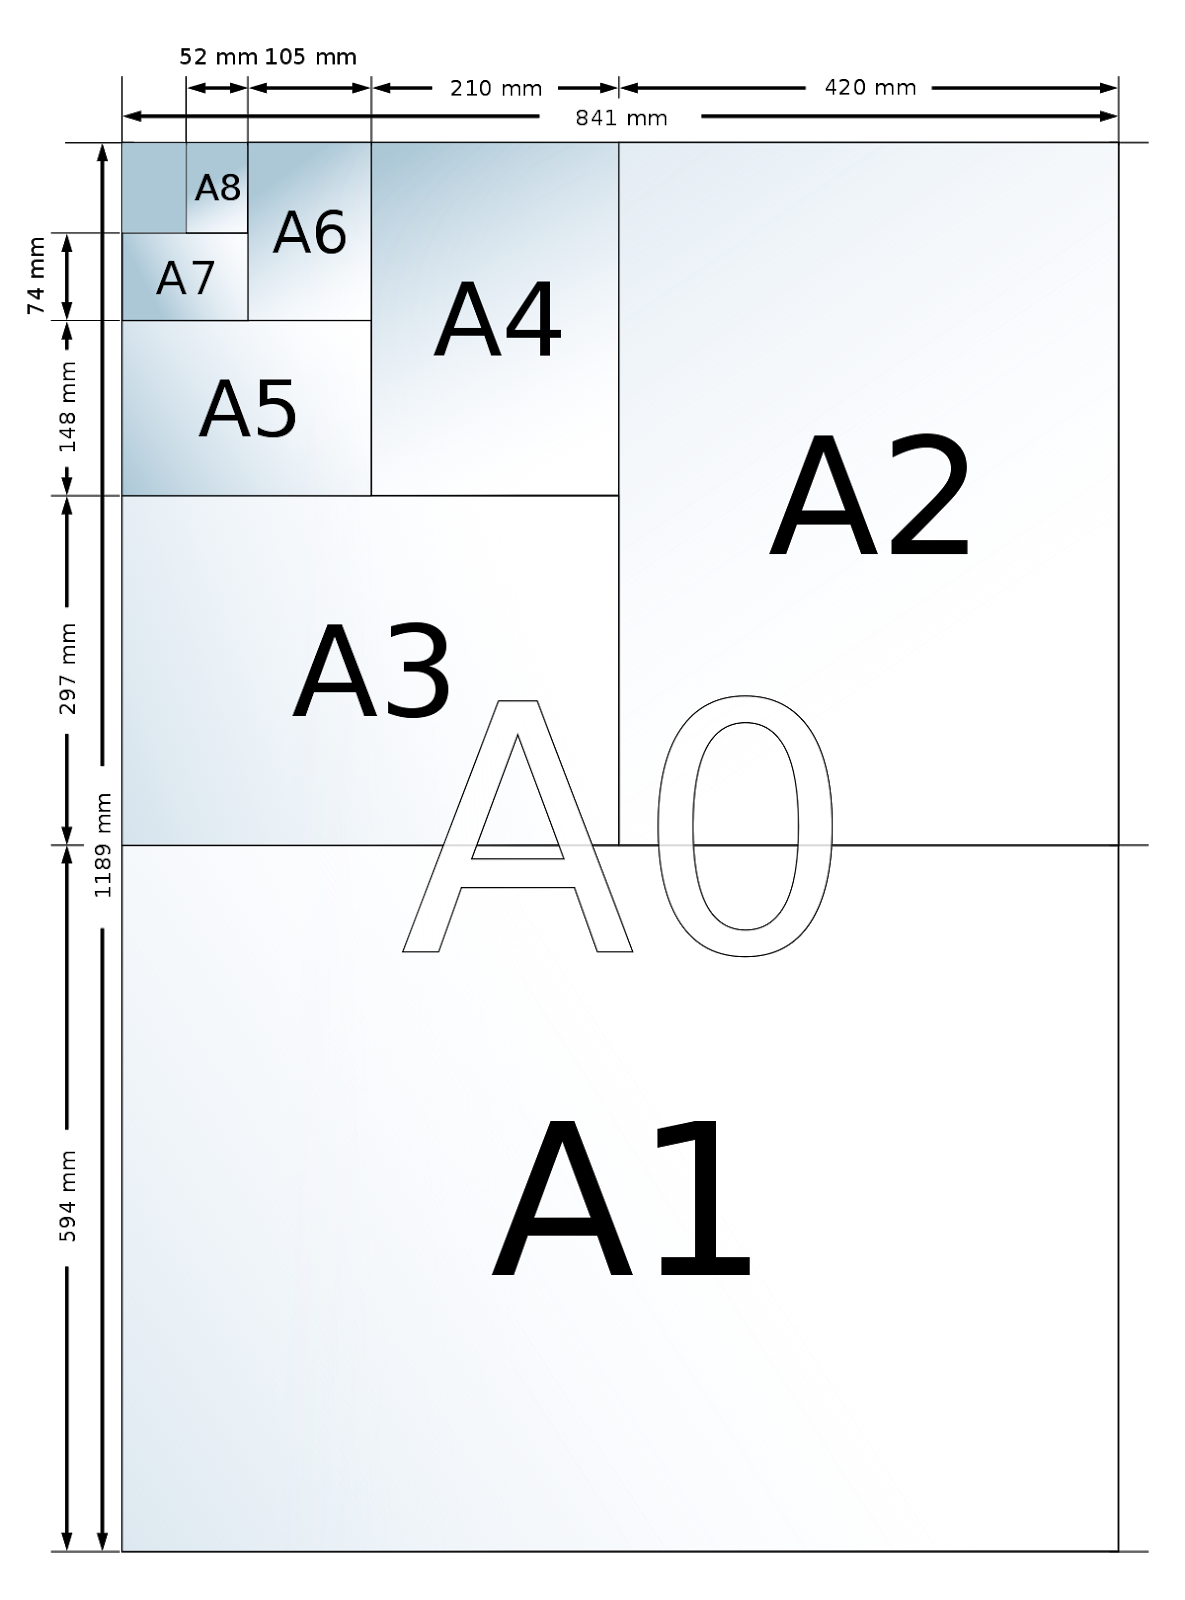 Kích thước của mẫu giấy A4 thông dụng nhất